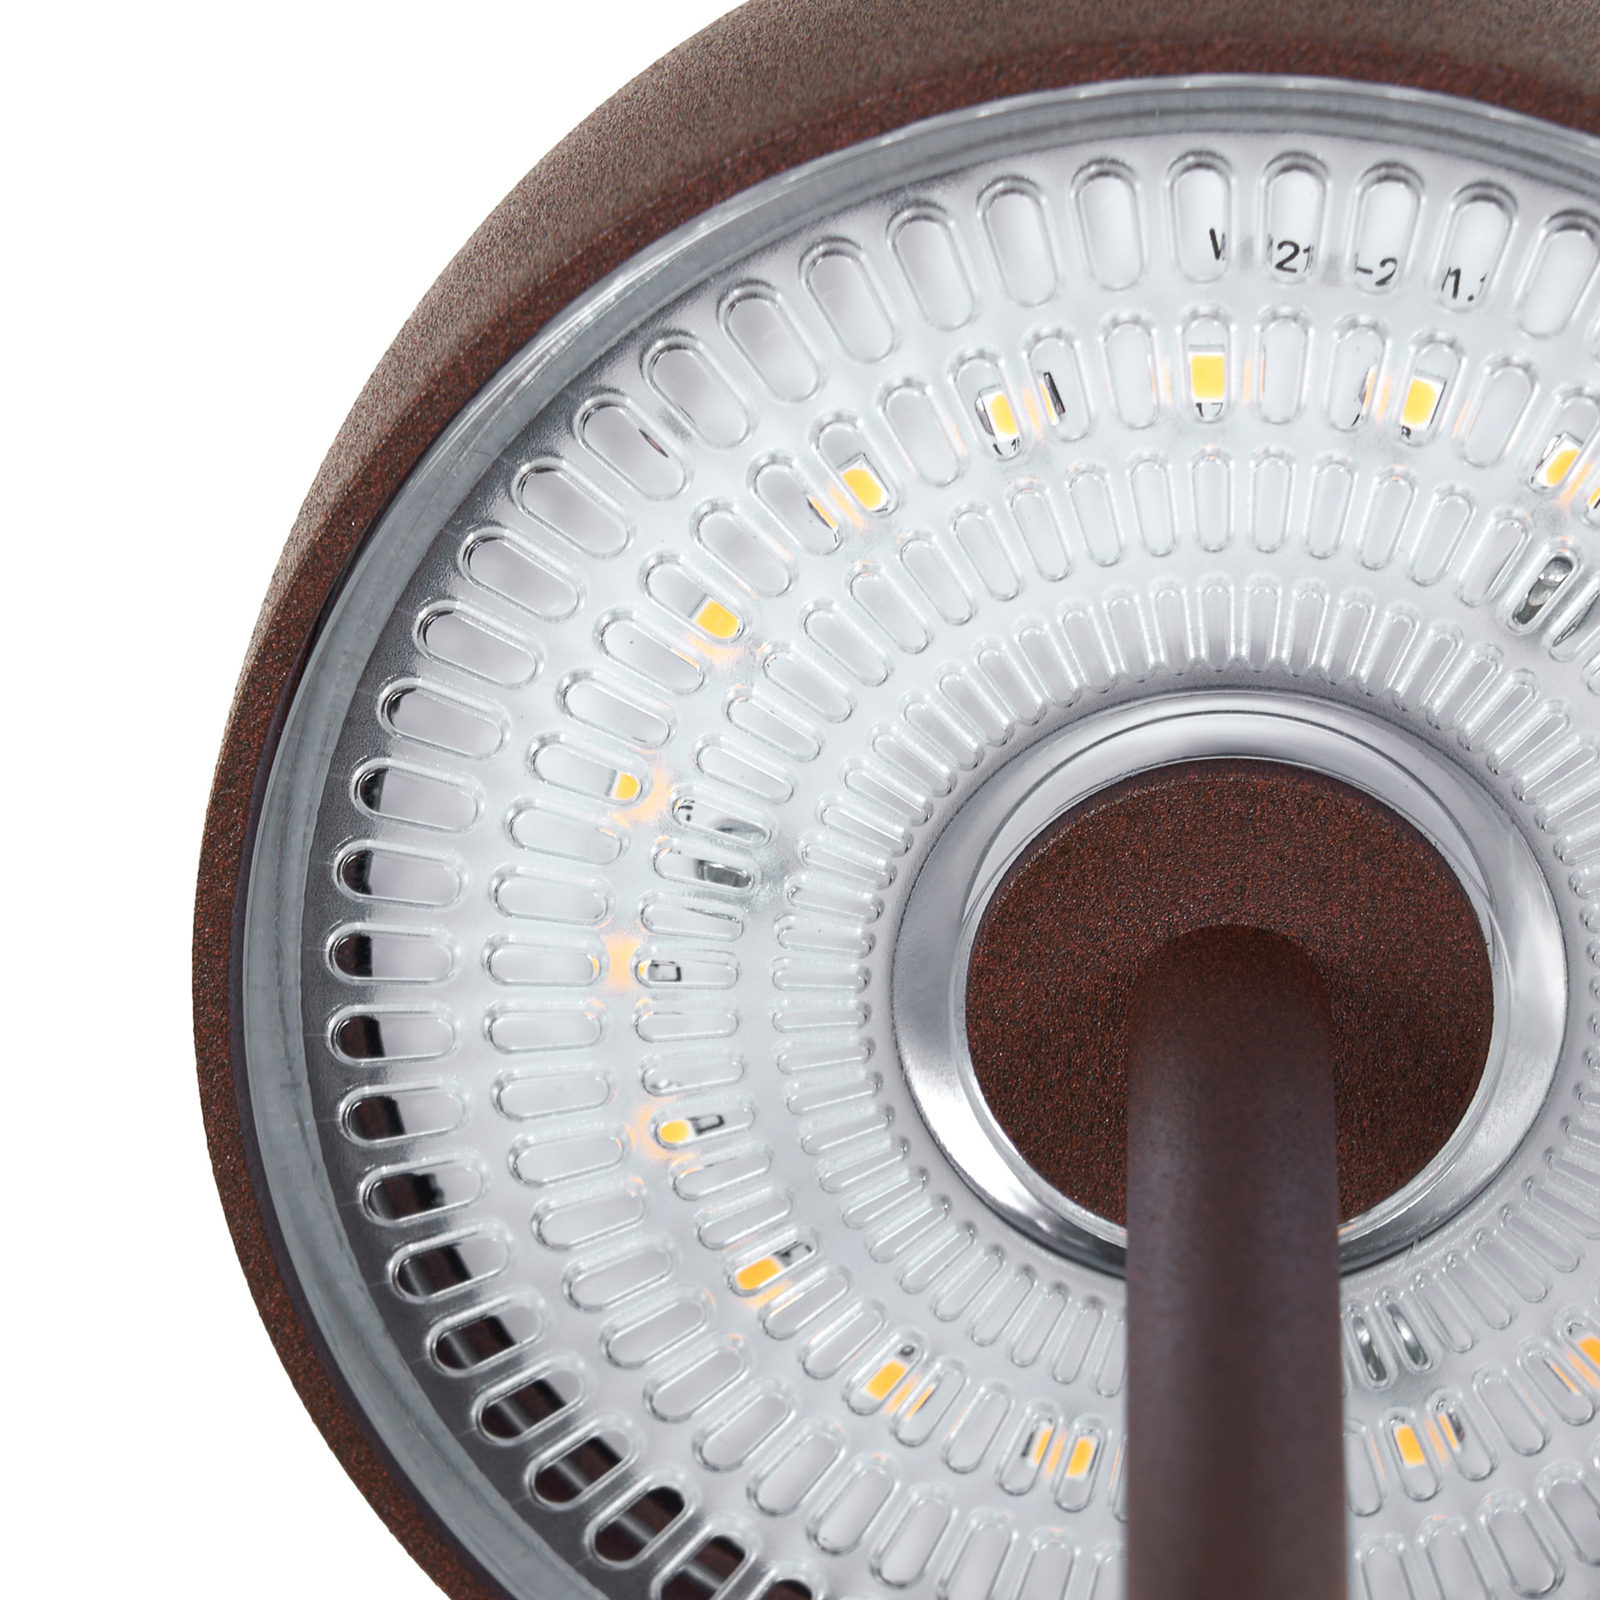 Lindby LED tafellamp Arietty, bruin, set van 2, aluminium